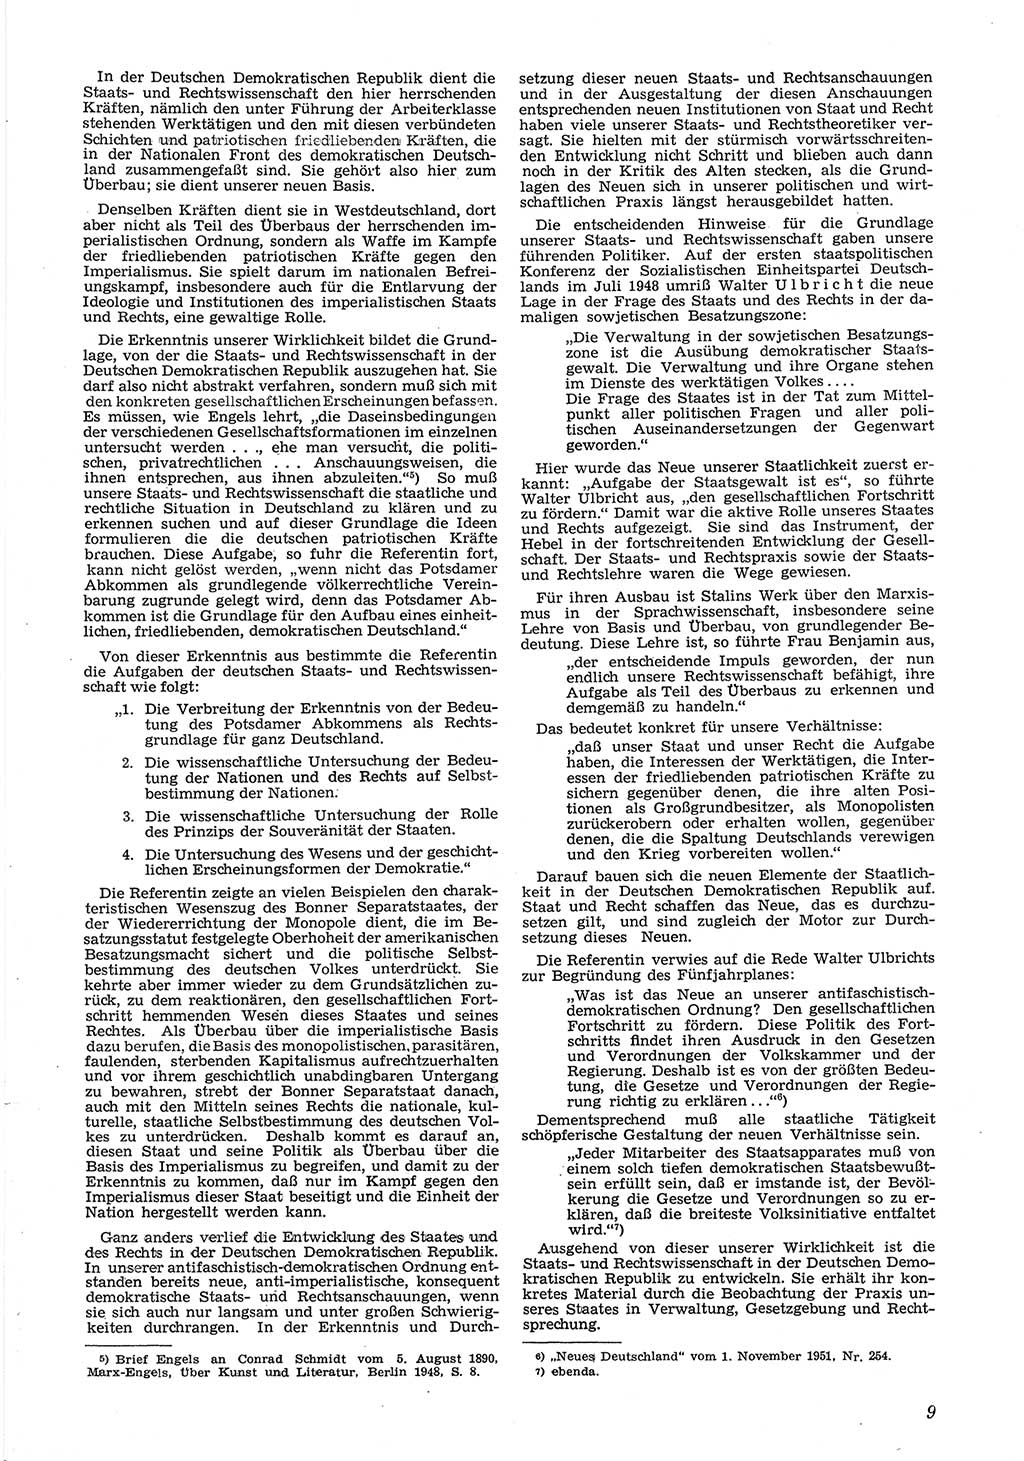 Neue Justiz (NJ), Zeitschrift für Recht und Rechtswissenschaft [Deutsche Demokratische Republik (DDR)], 6. Jahrgang 1952, Seite 9 (NJ DDR 1952, S. 9)